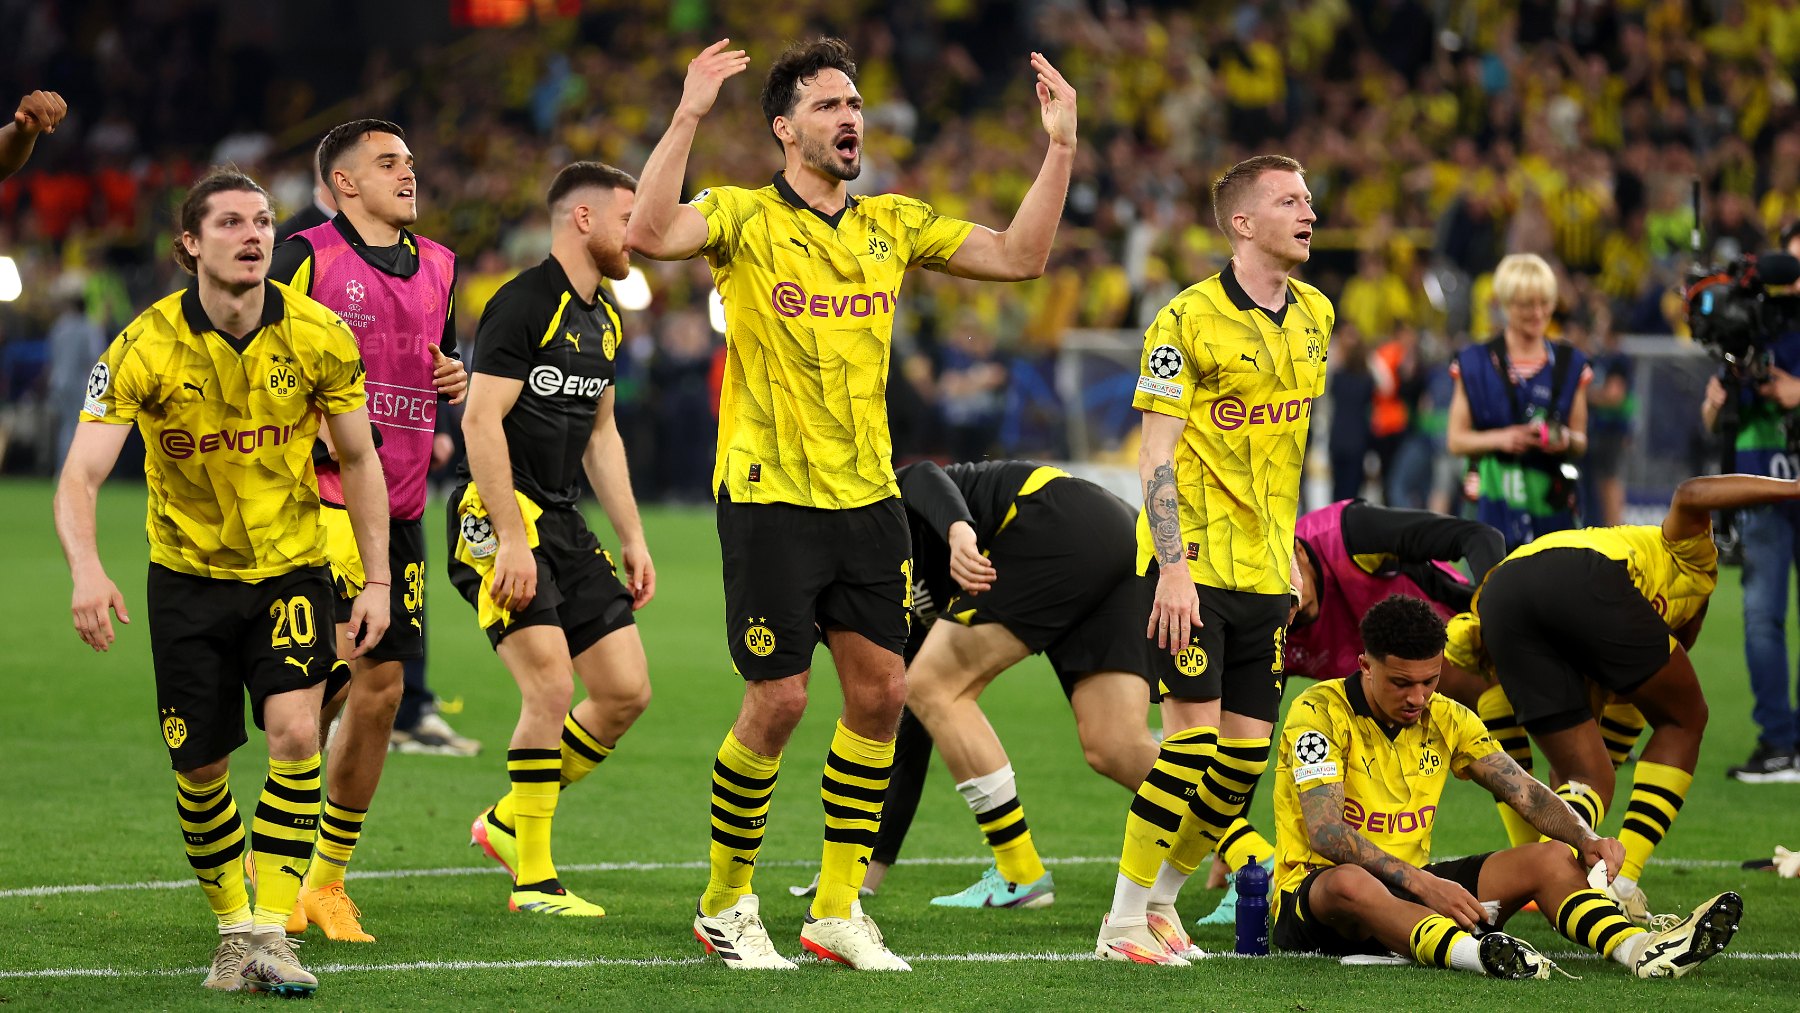 El Borussia Dortmund viste de amarillo y negro en su primera equipación. (Getty)